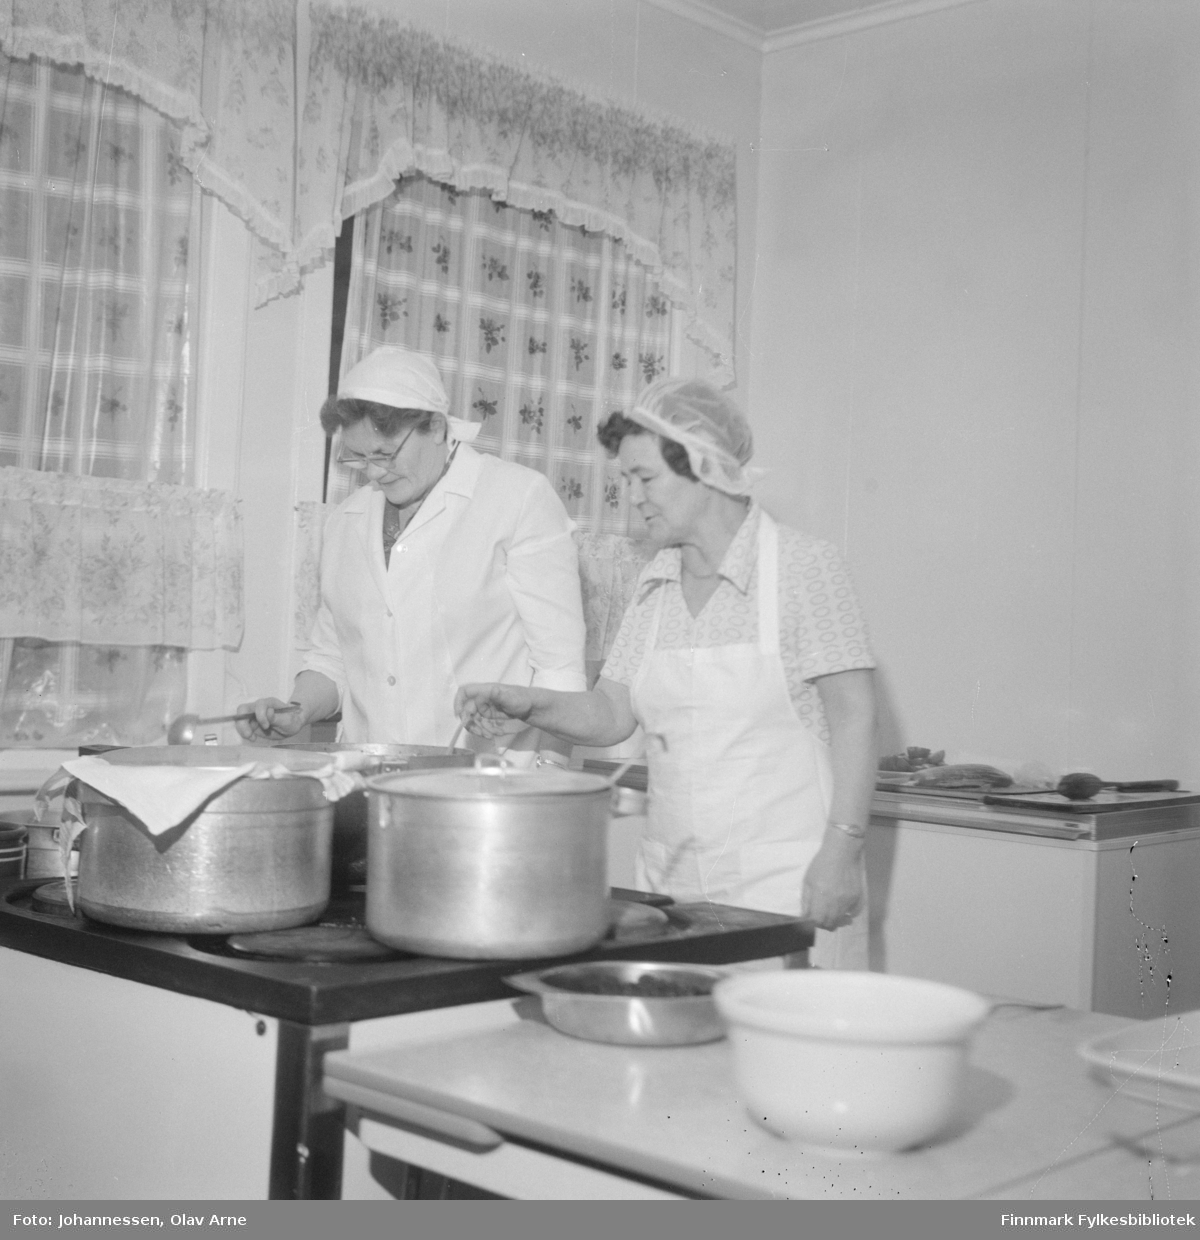 I Kjøkkentjeneste, Borghild Sund til venstre

Foto fra ukjent sted, trolig et kjøkken i Båtsfjord, Finnmark 

Kjøkkenet går igjen på flere bilder. 
